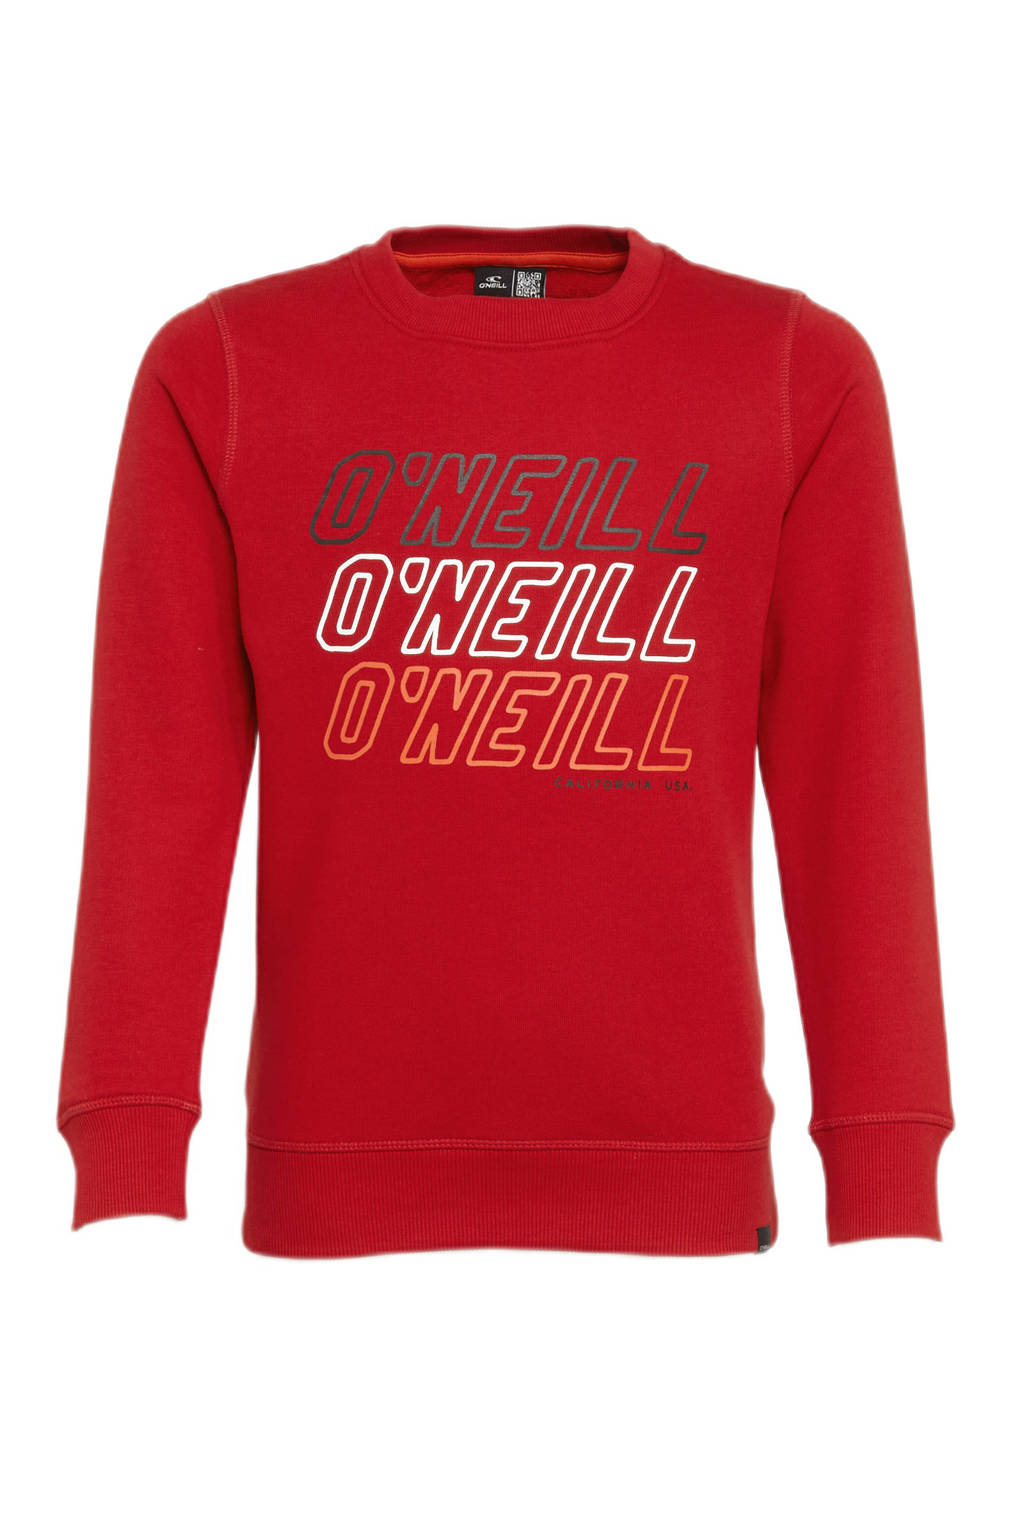 Rode jongens O'Neill trui van katoen met logo dessin, lange mouwen en ronde hals